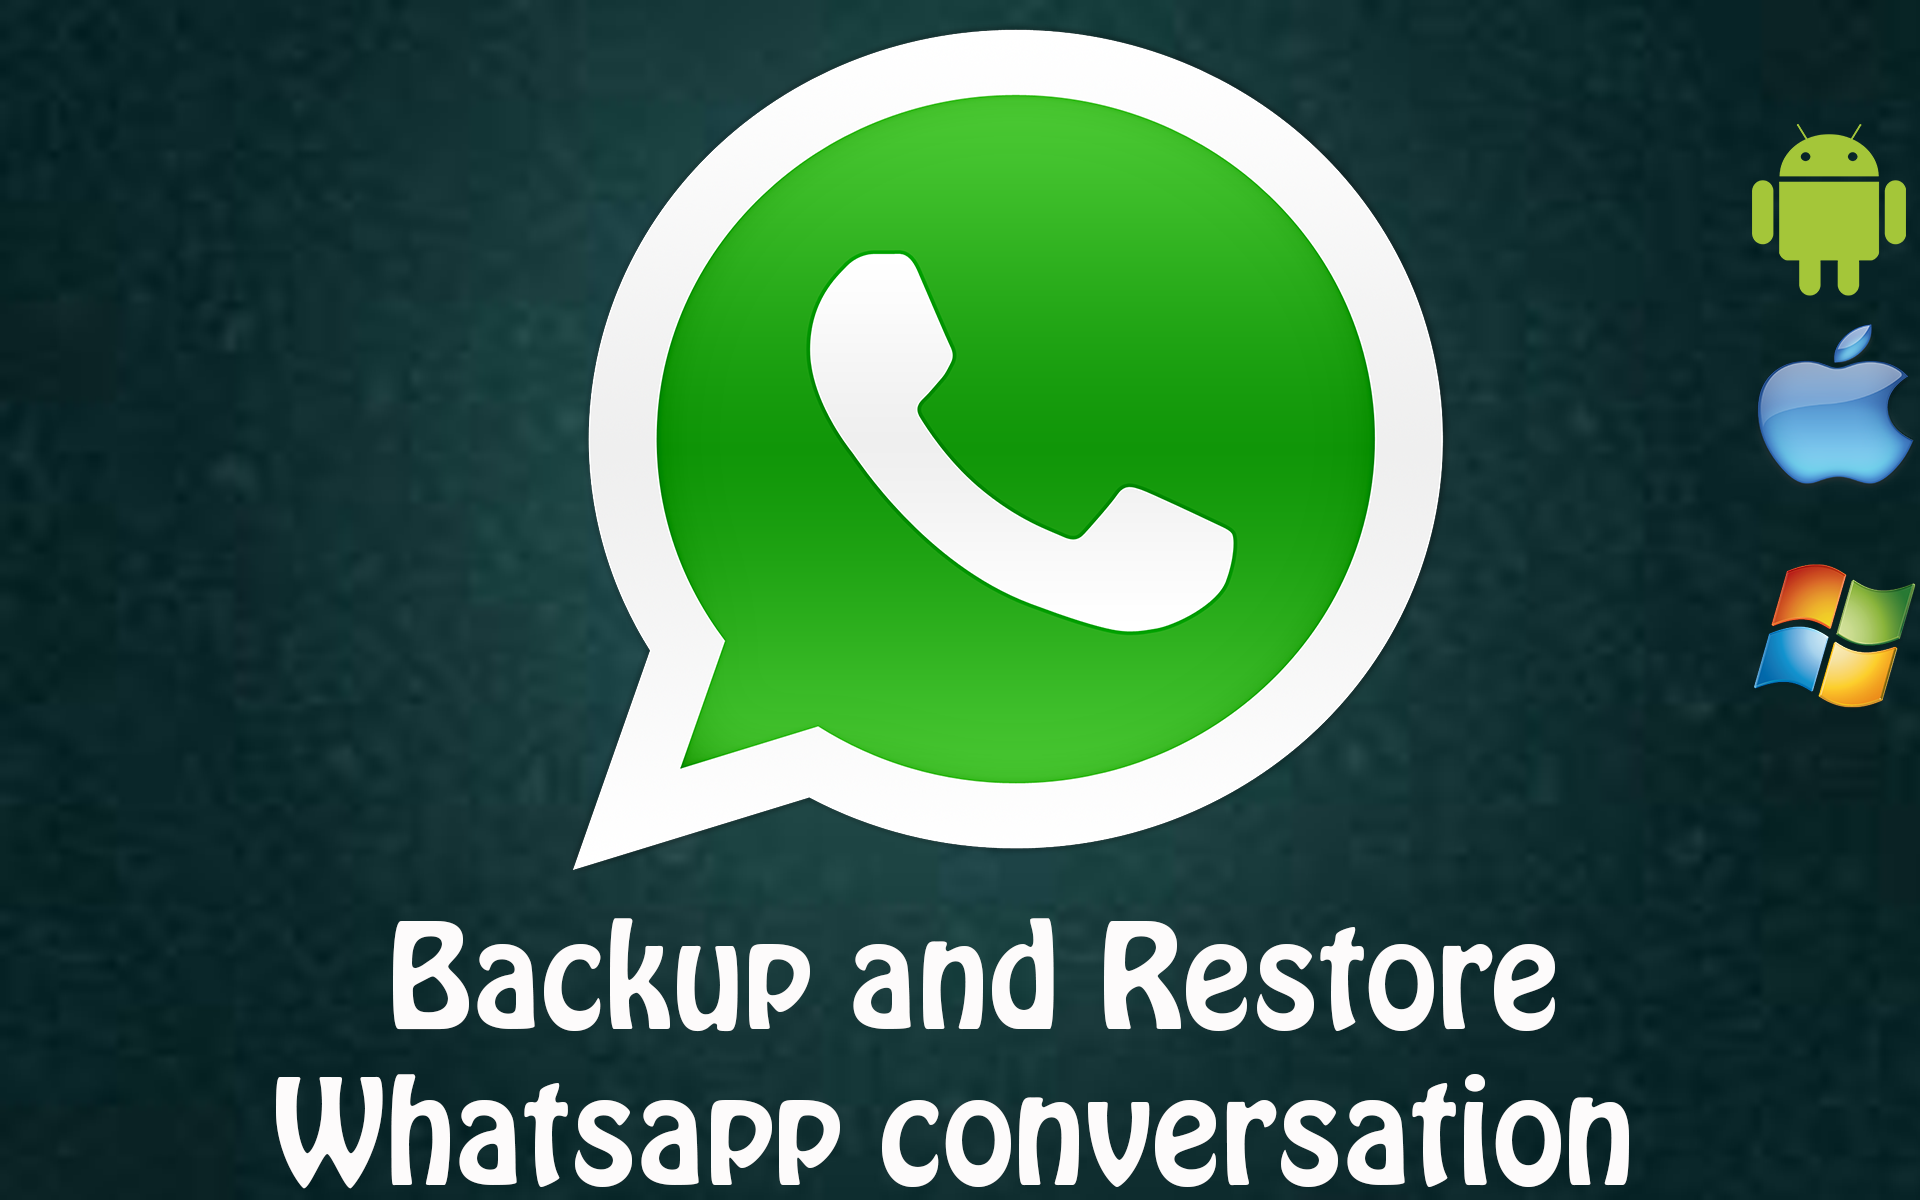 Copia de seguridad y restauración Eliminar accidentalmente la conversación de WhatsApp